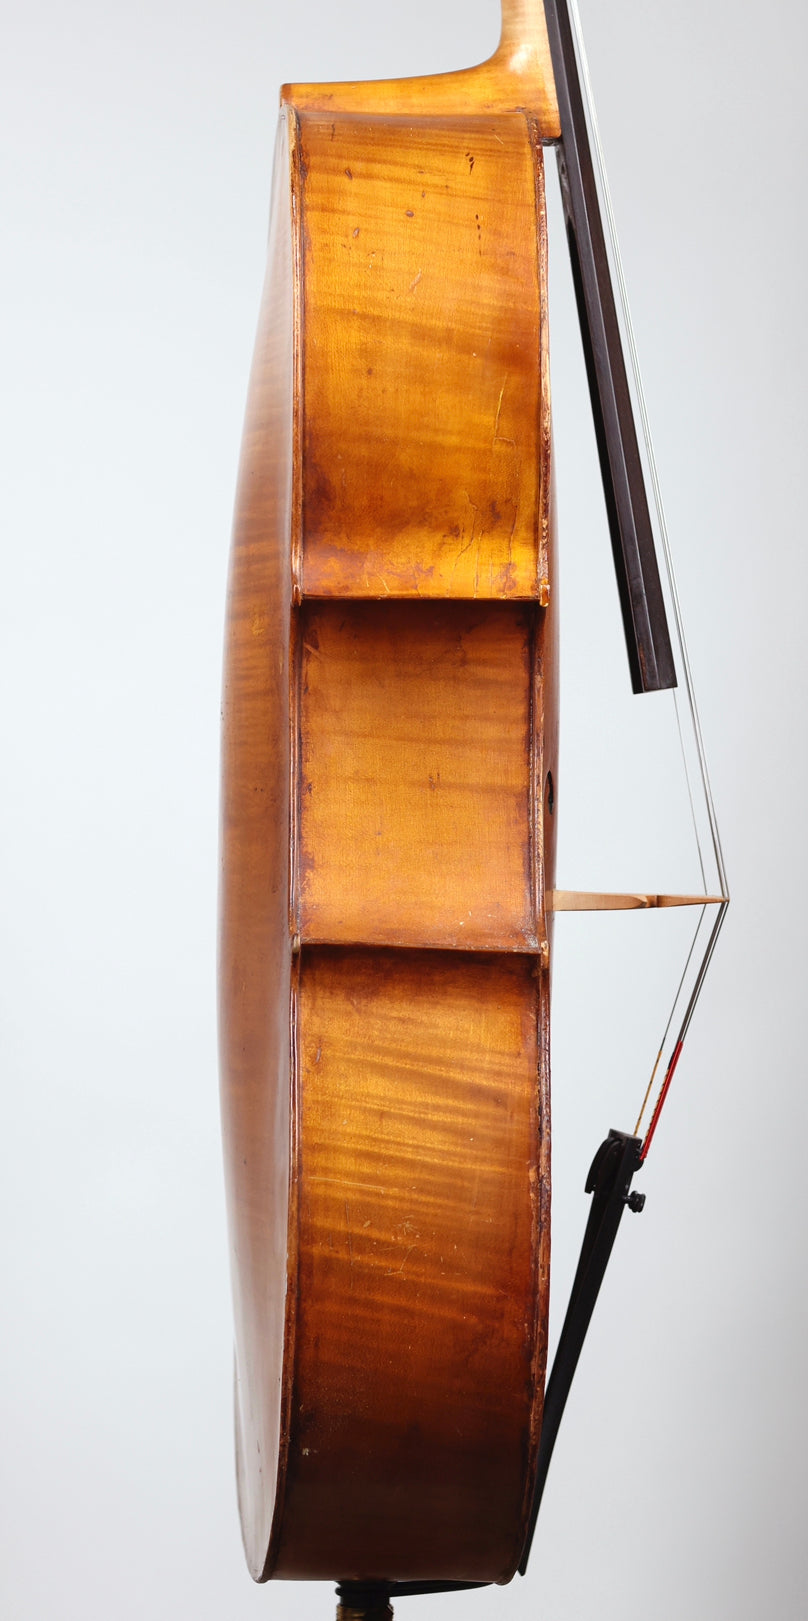 An Early 20th Century Saxon Cello